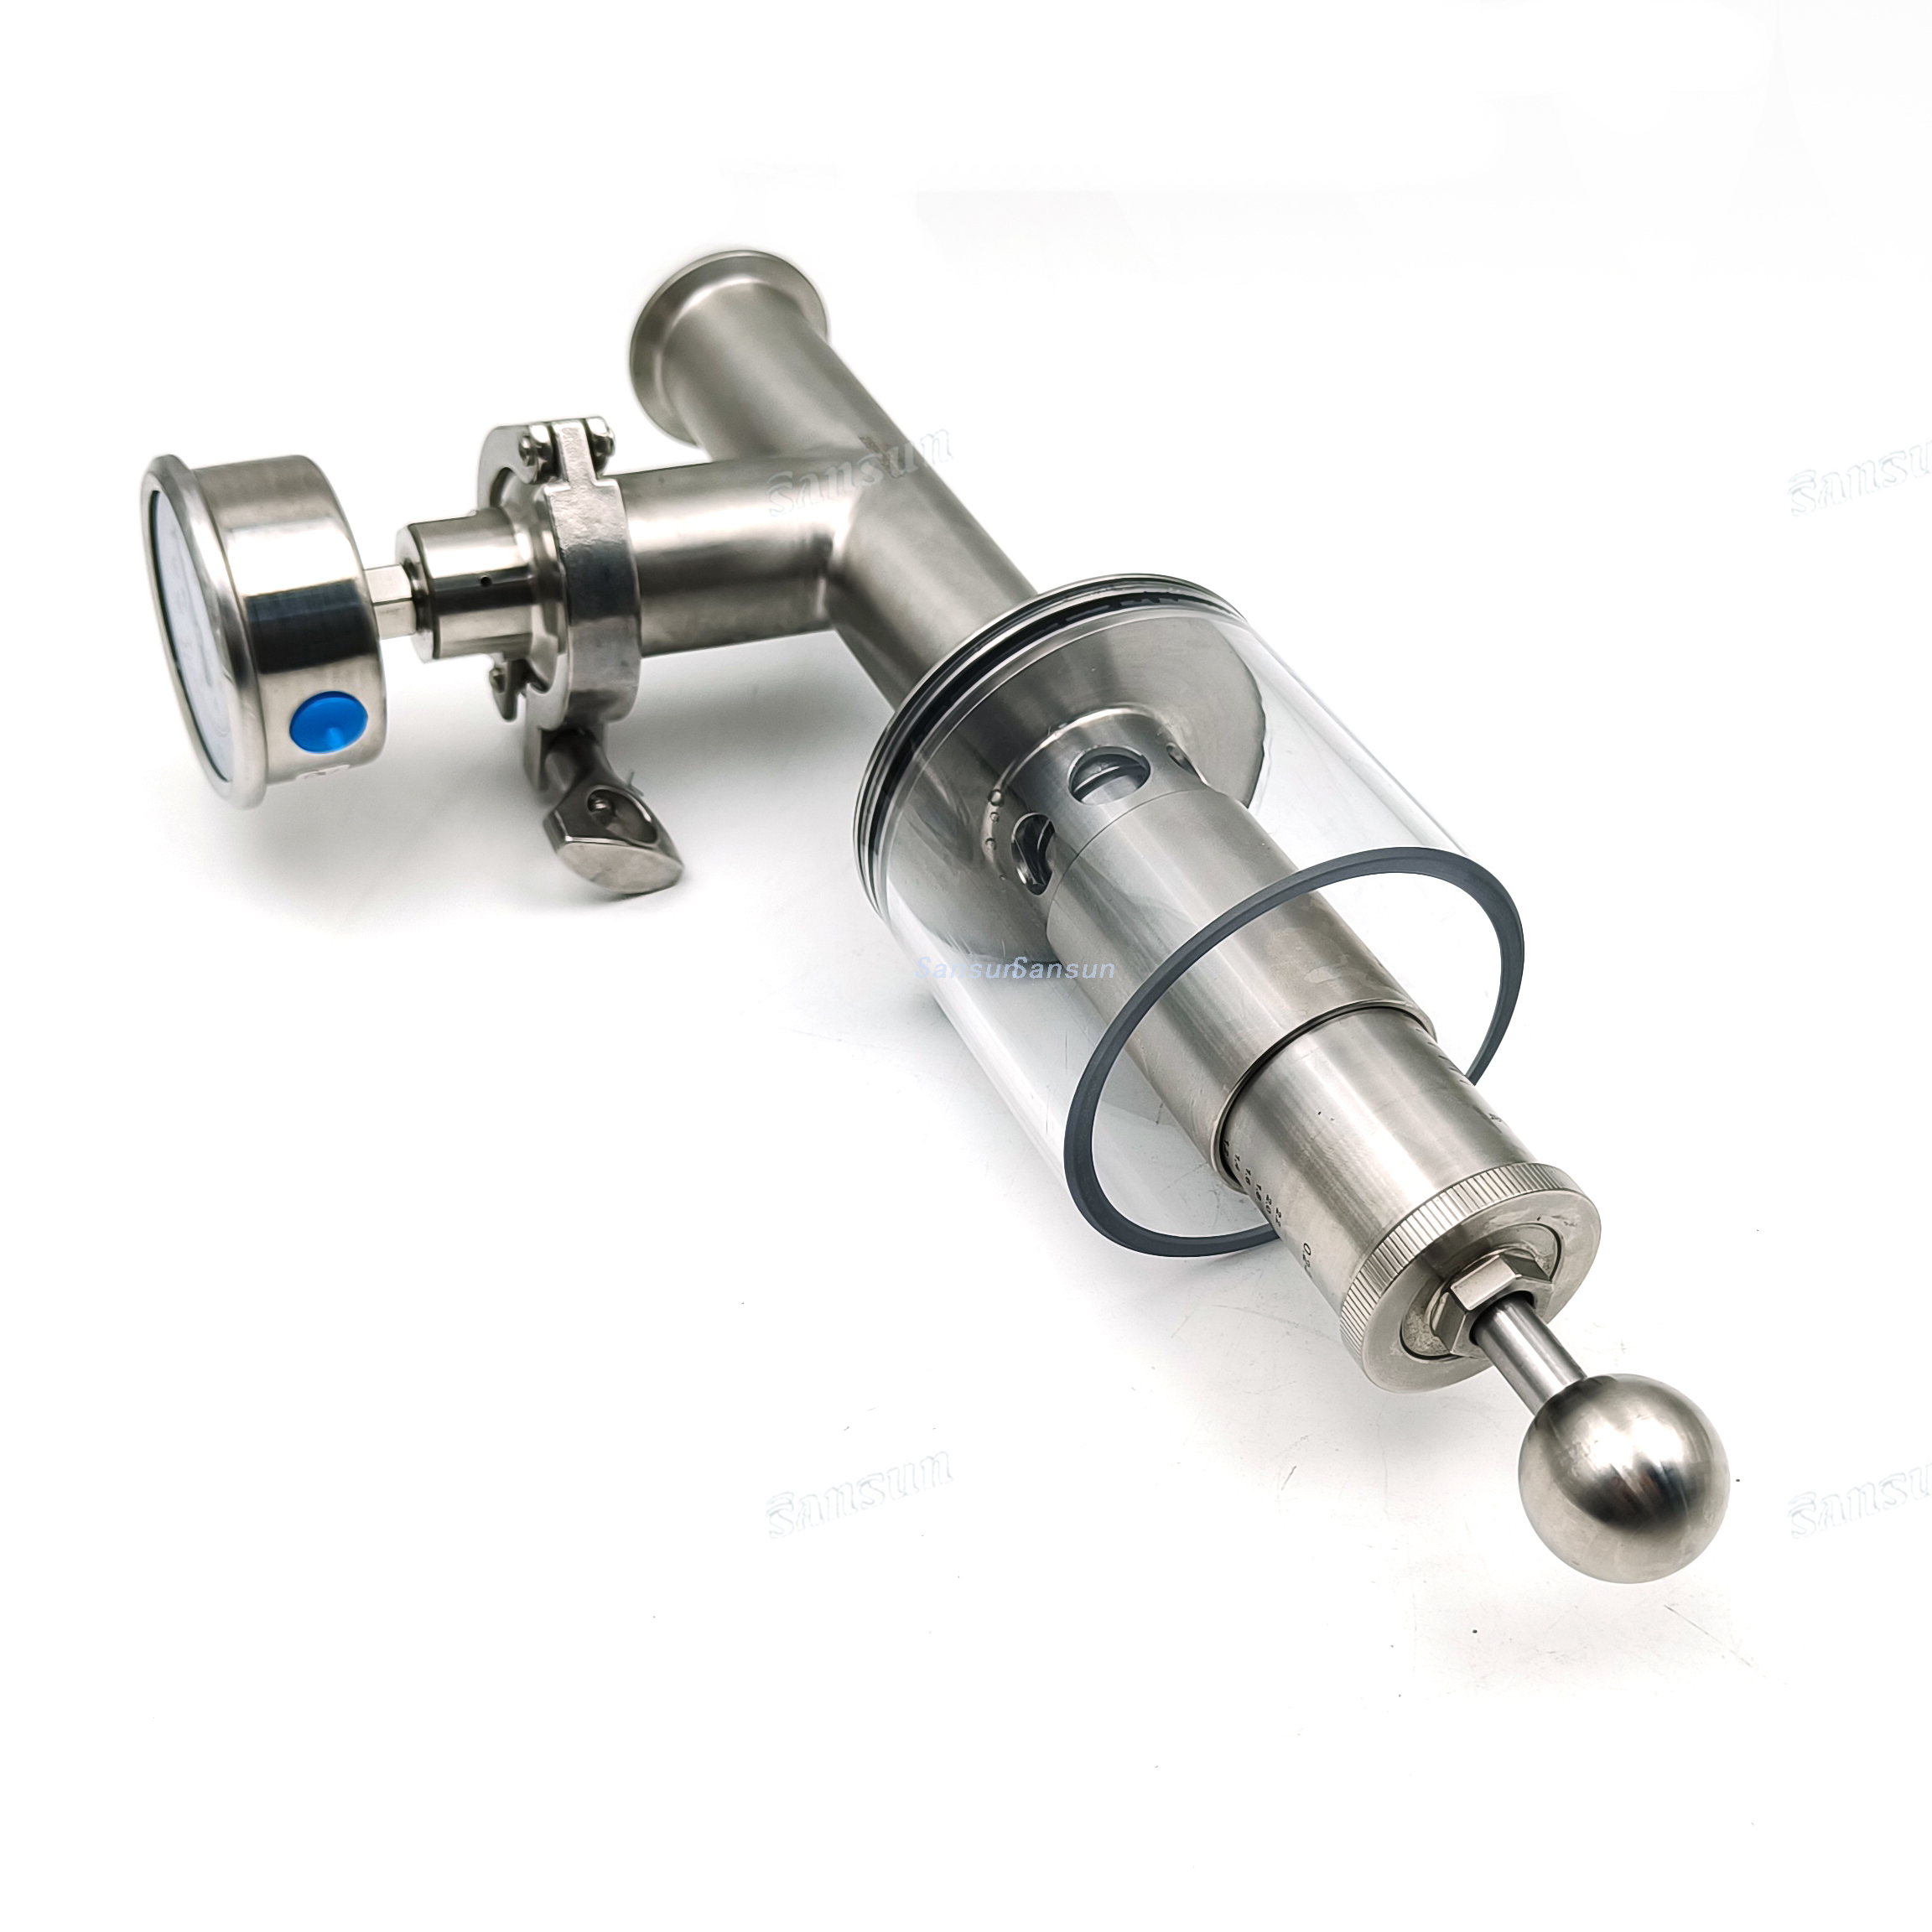 Válvula de bun de alivio compatible con presión compatible con trébol de 1.5 pulgadas